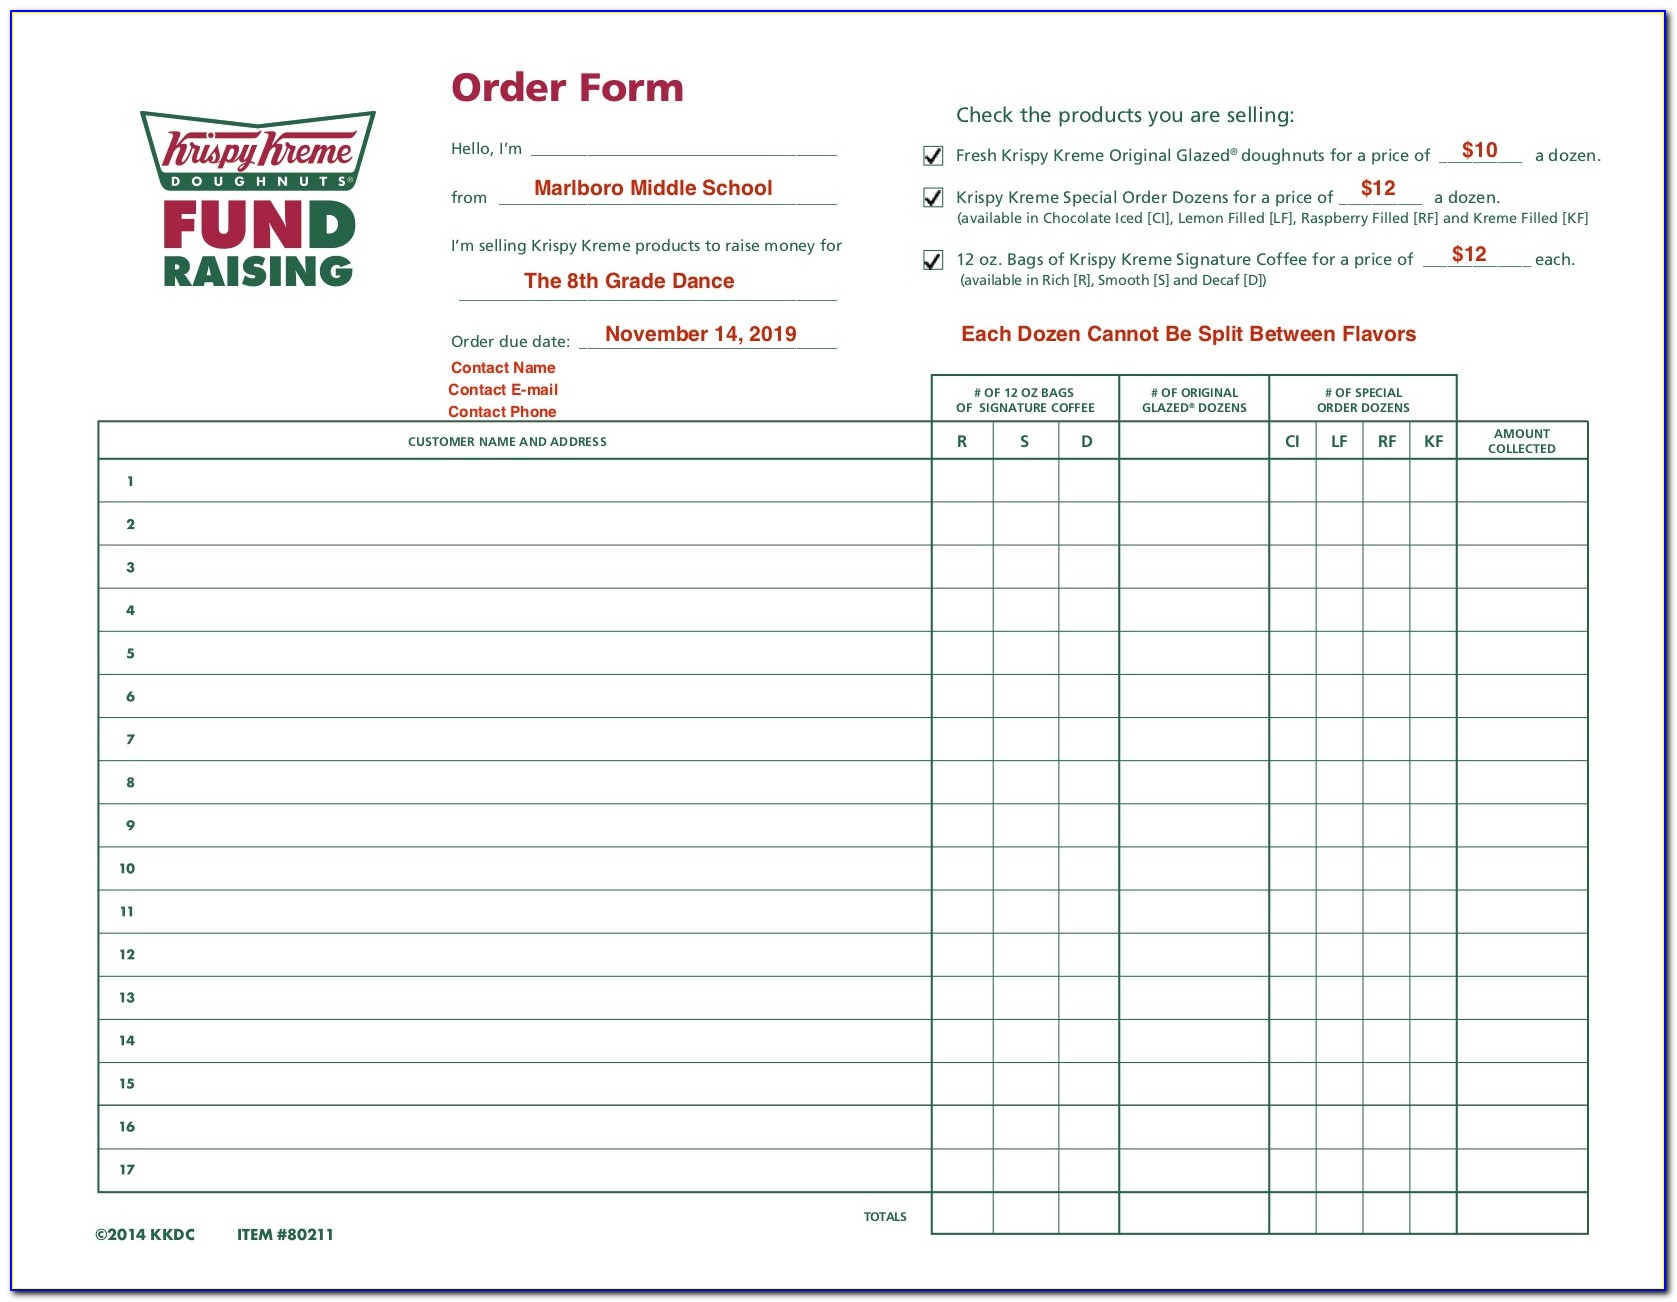 Krispy Kreme Gift Certificate Fundraiser